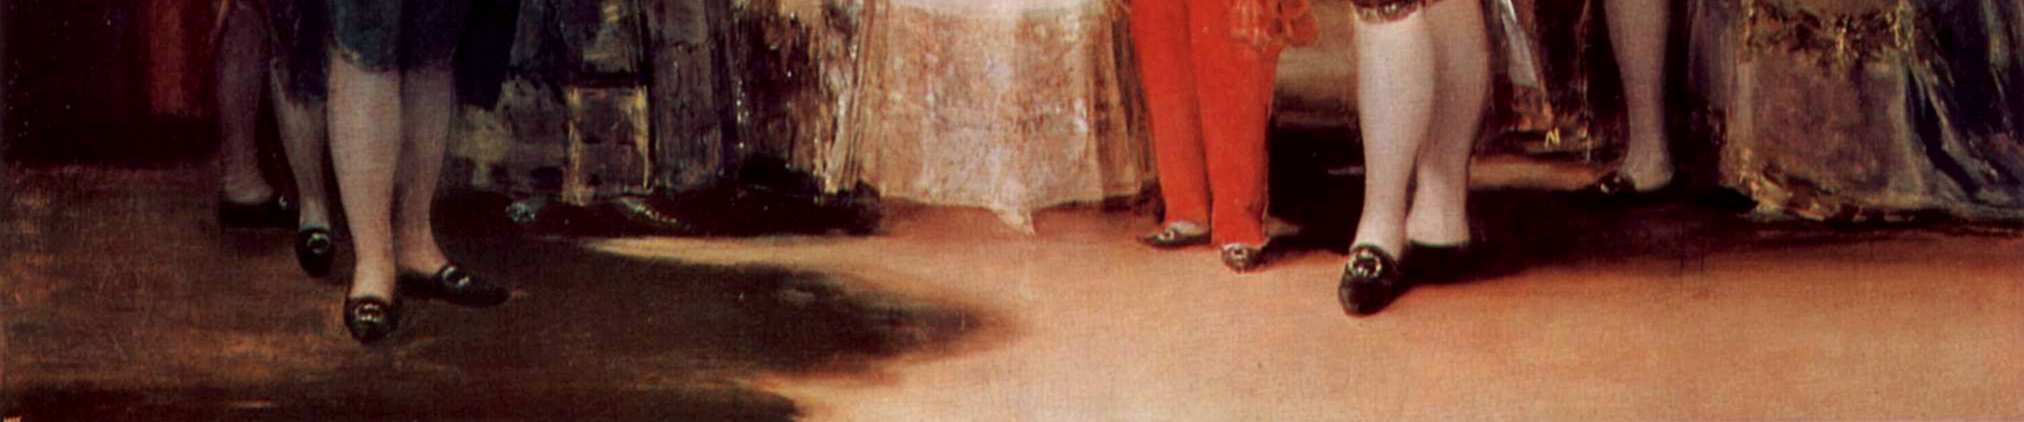 Descubriendo arte: La familia de Carlos IV Goya recibió el real encargo de pintar un retrato conjunto de la Familia Real.